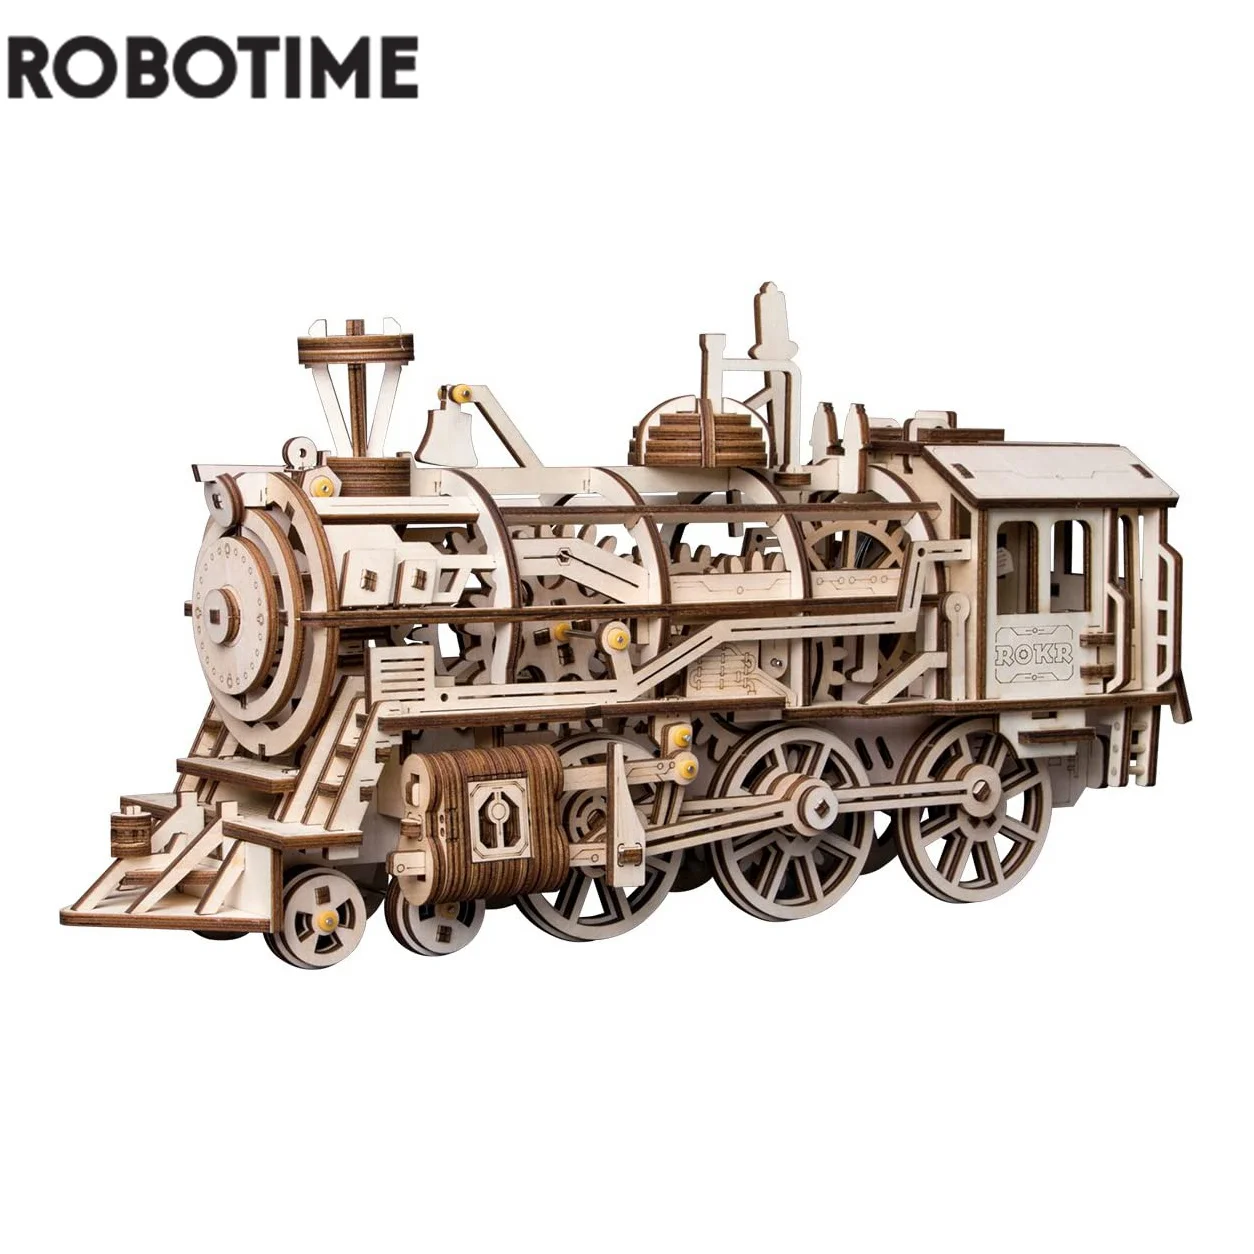 Robotime – Ensemble De Blocs De Construction En Bois, Découpe Laser, Modèle  Mécanique 3d, Cadeau Pour Enfants Et Adultes, 4 Modèles, Bricolage, Diy -  Modèle Kits De Construction - AliExpress